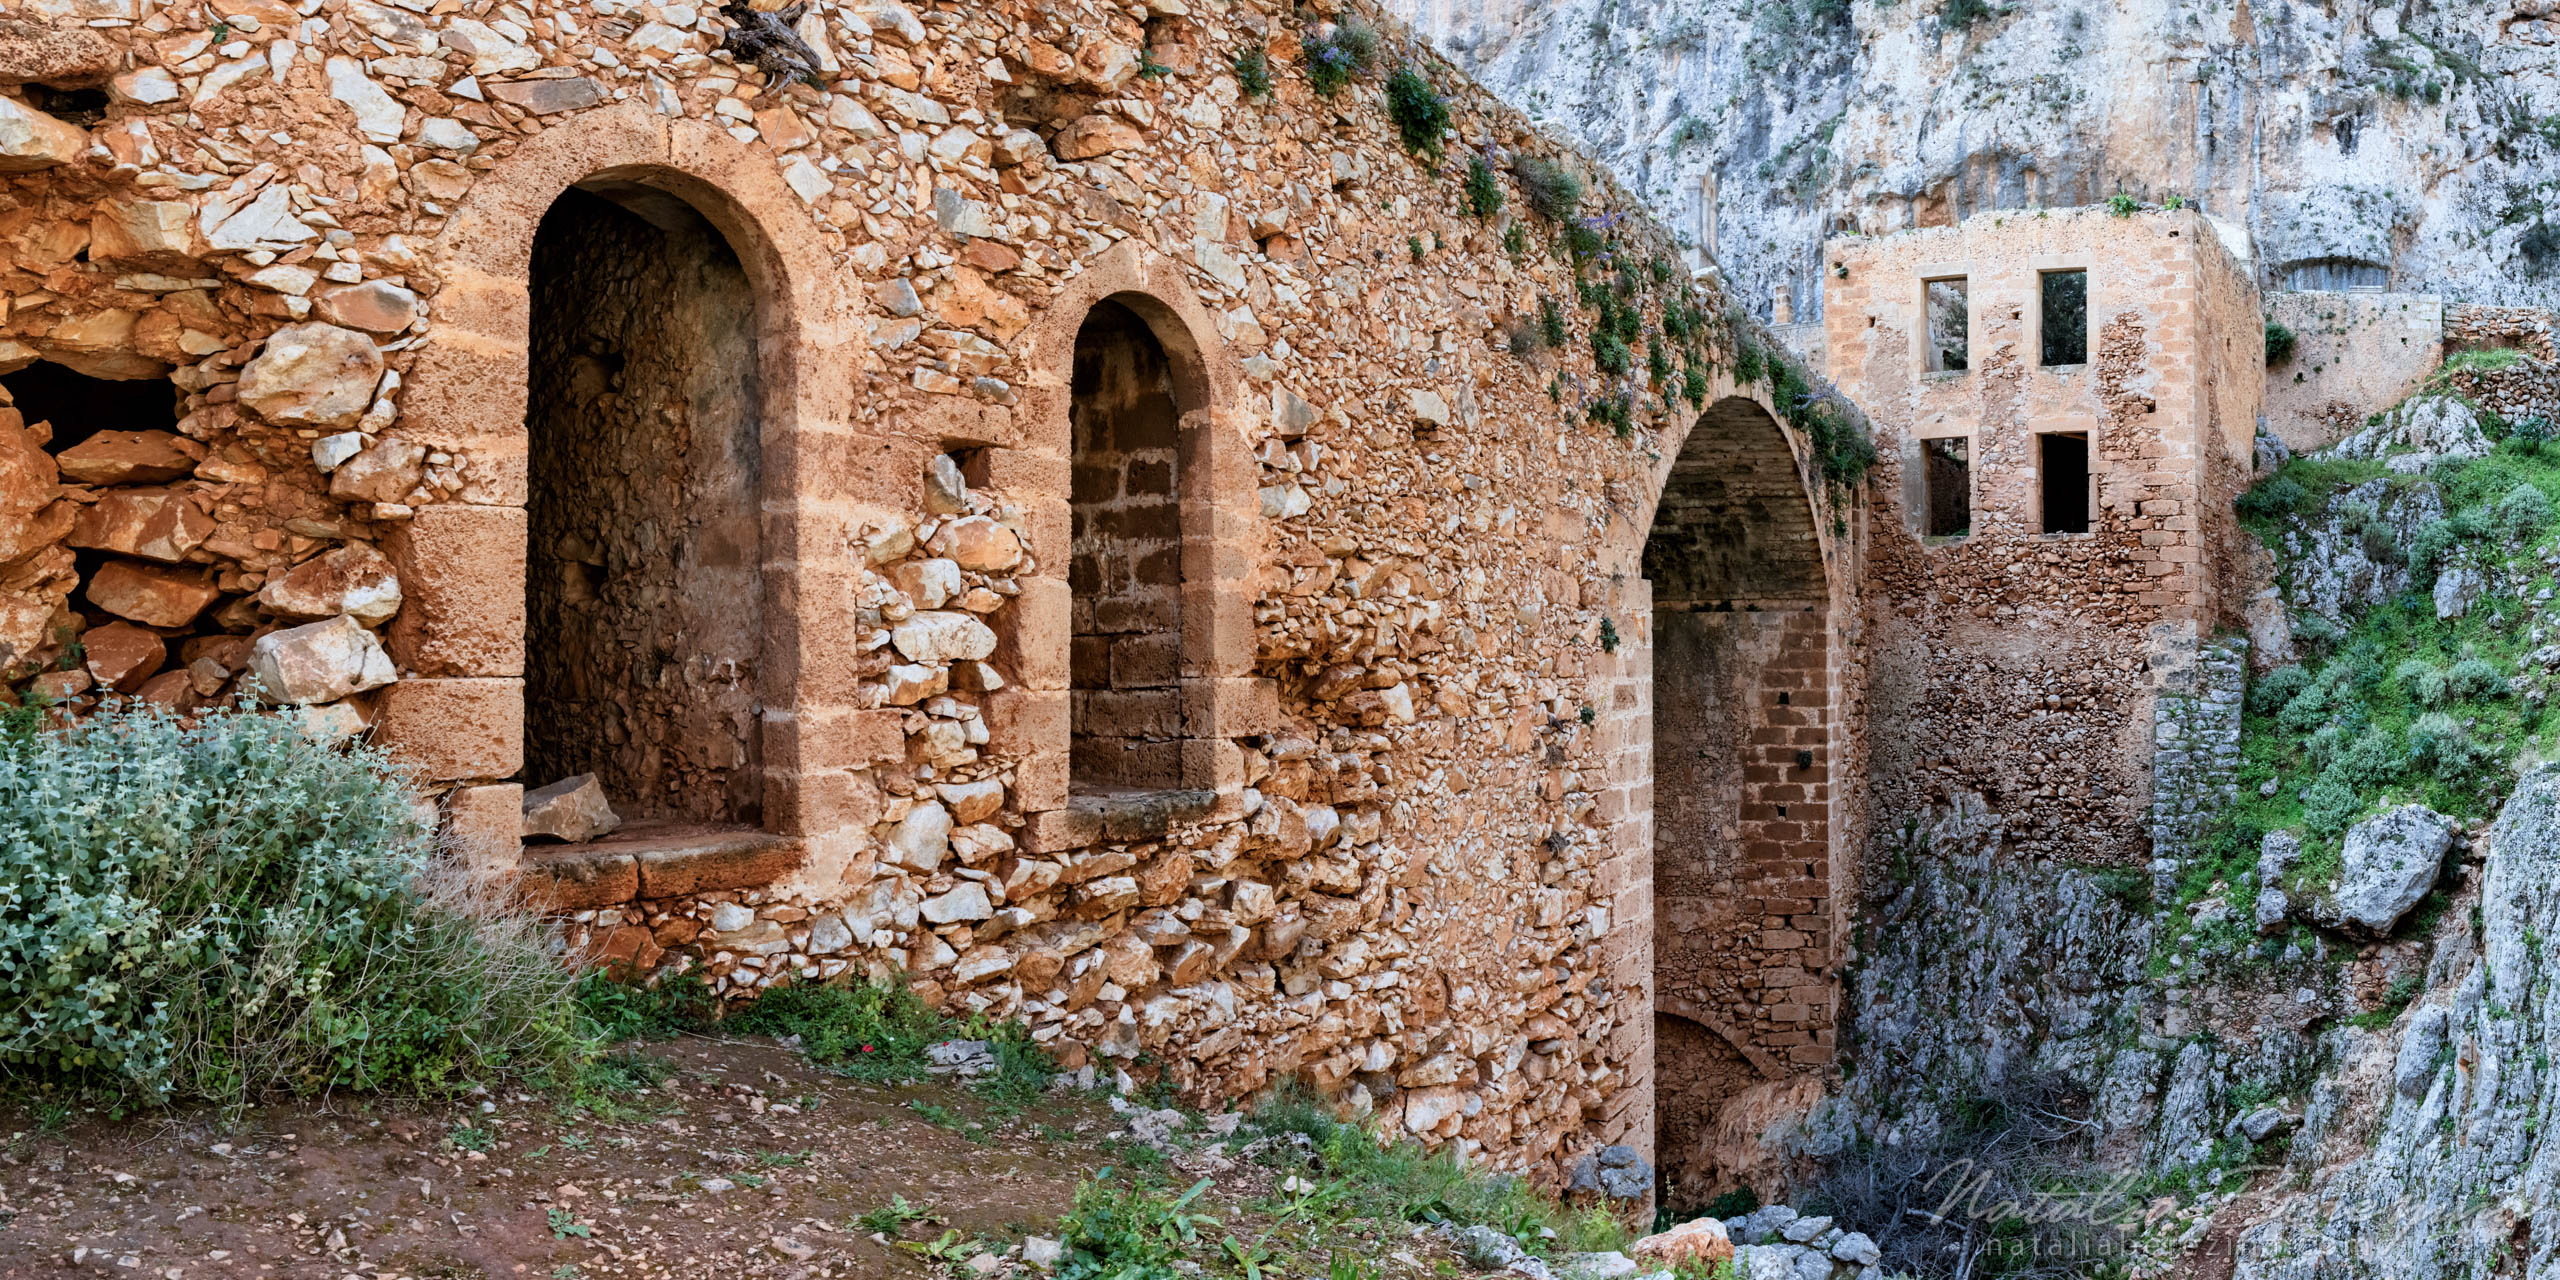 Greece, Crete, cityscape,  ruin,  2x1 CR1-NB0B4A9218-P - Crete, Greece - Natalia Berezina Photography